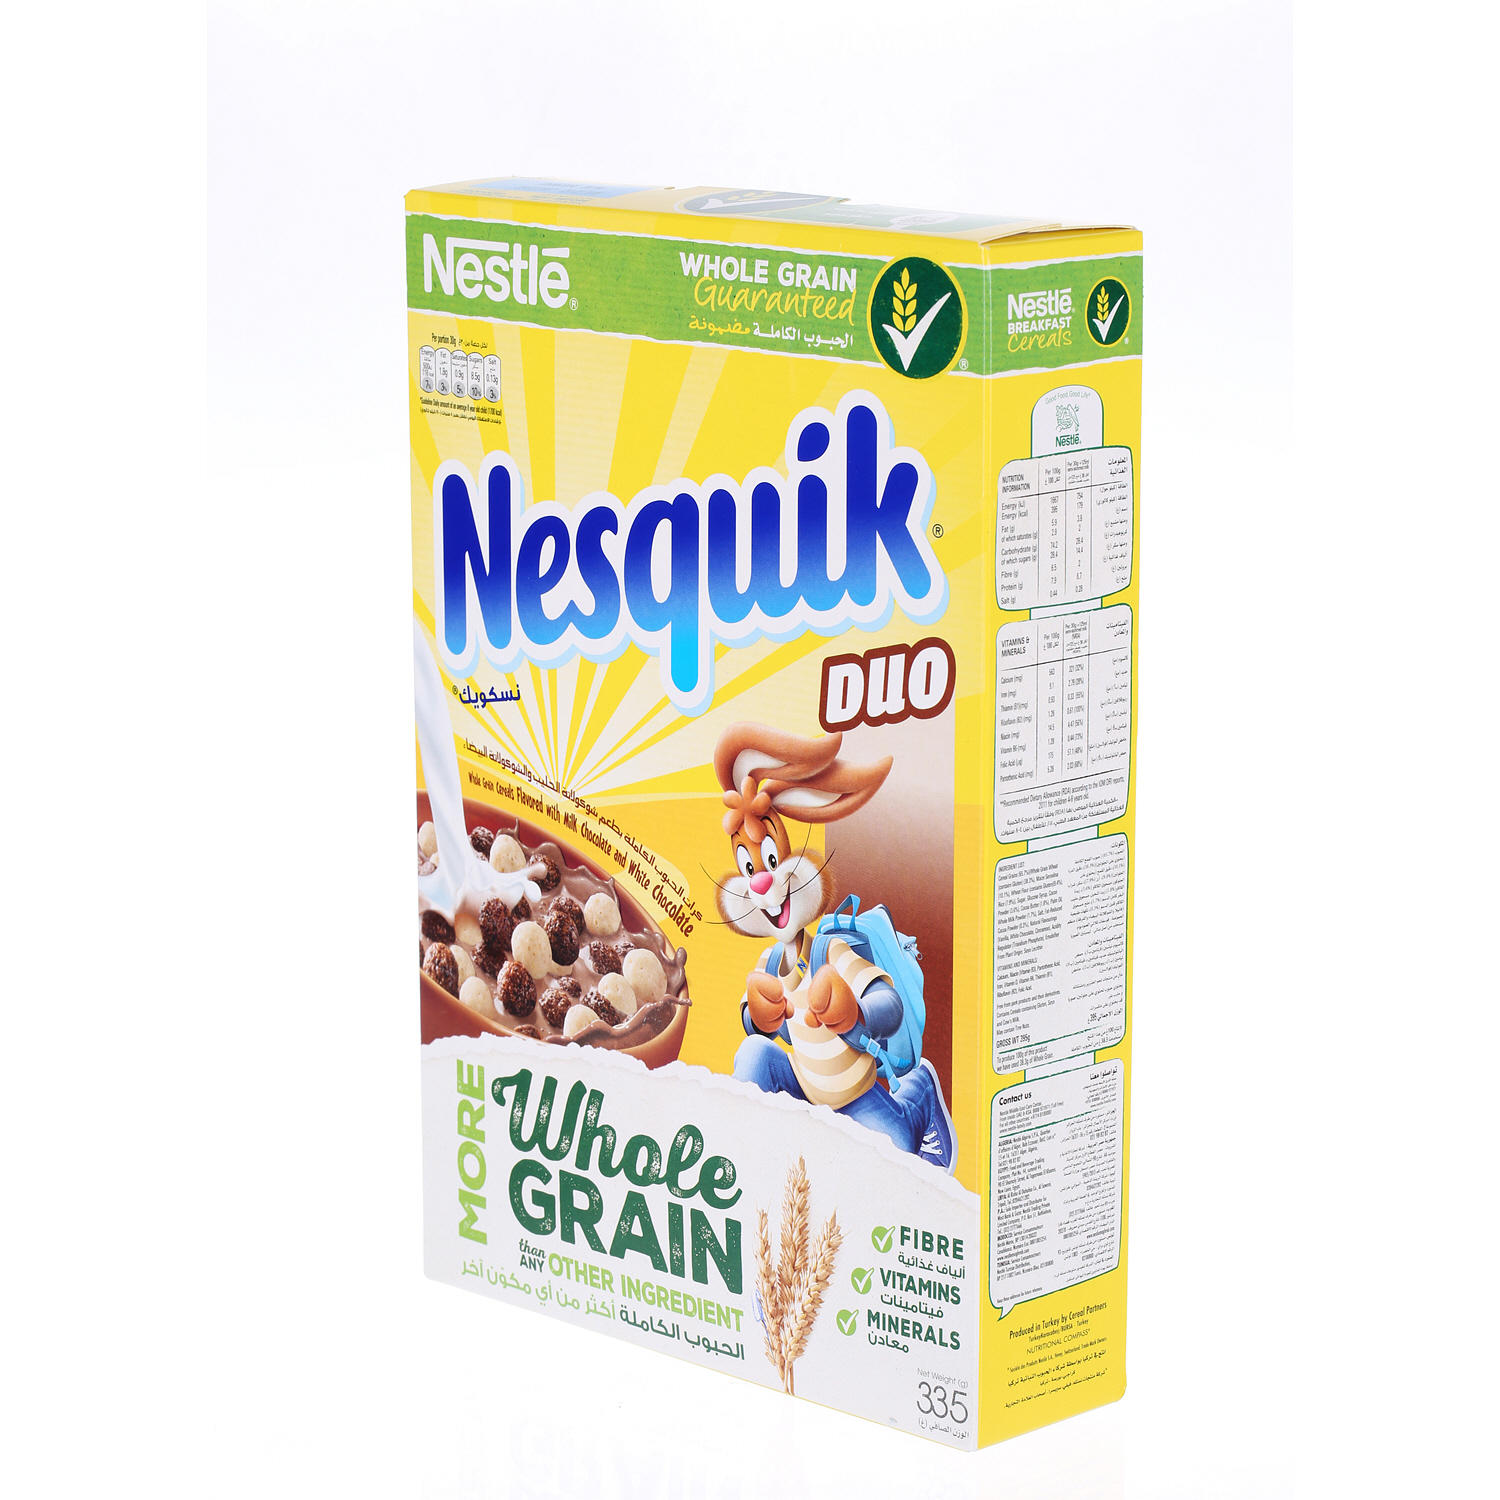 Nestlé Nesquick Duo Cereal 335gm